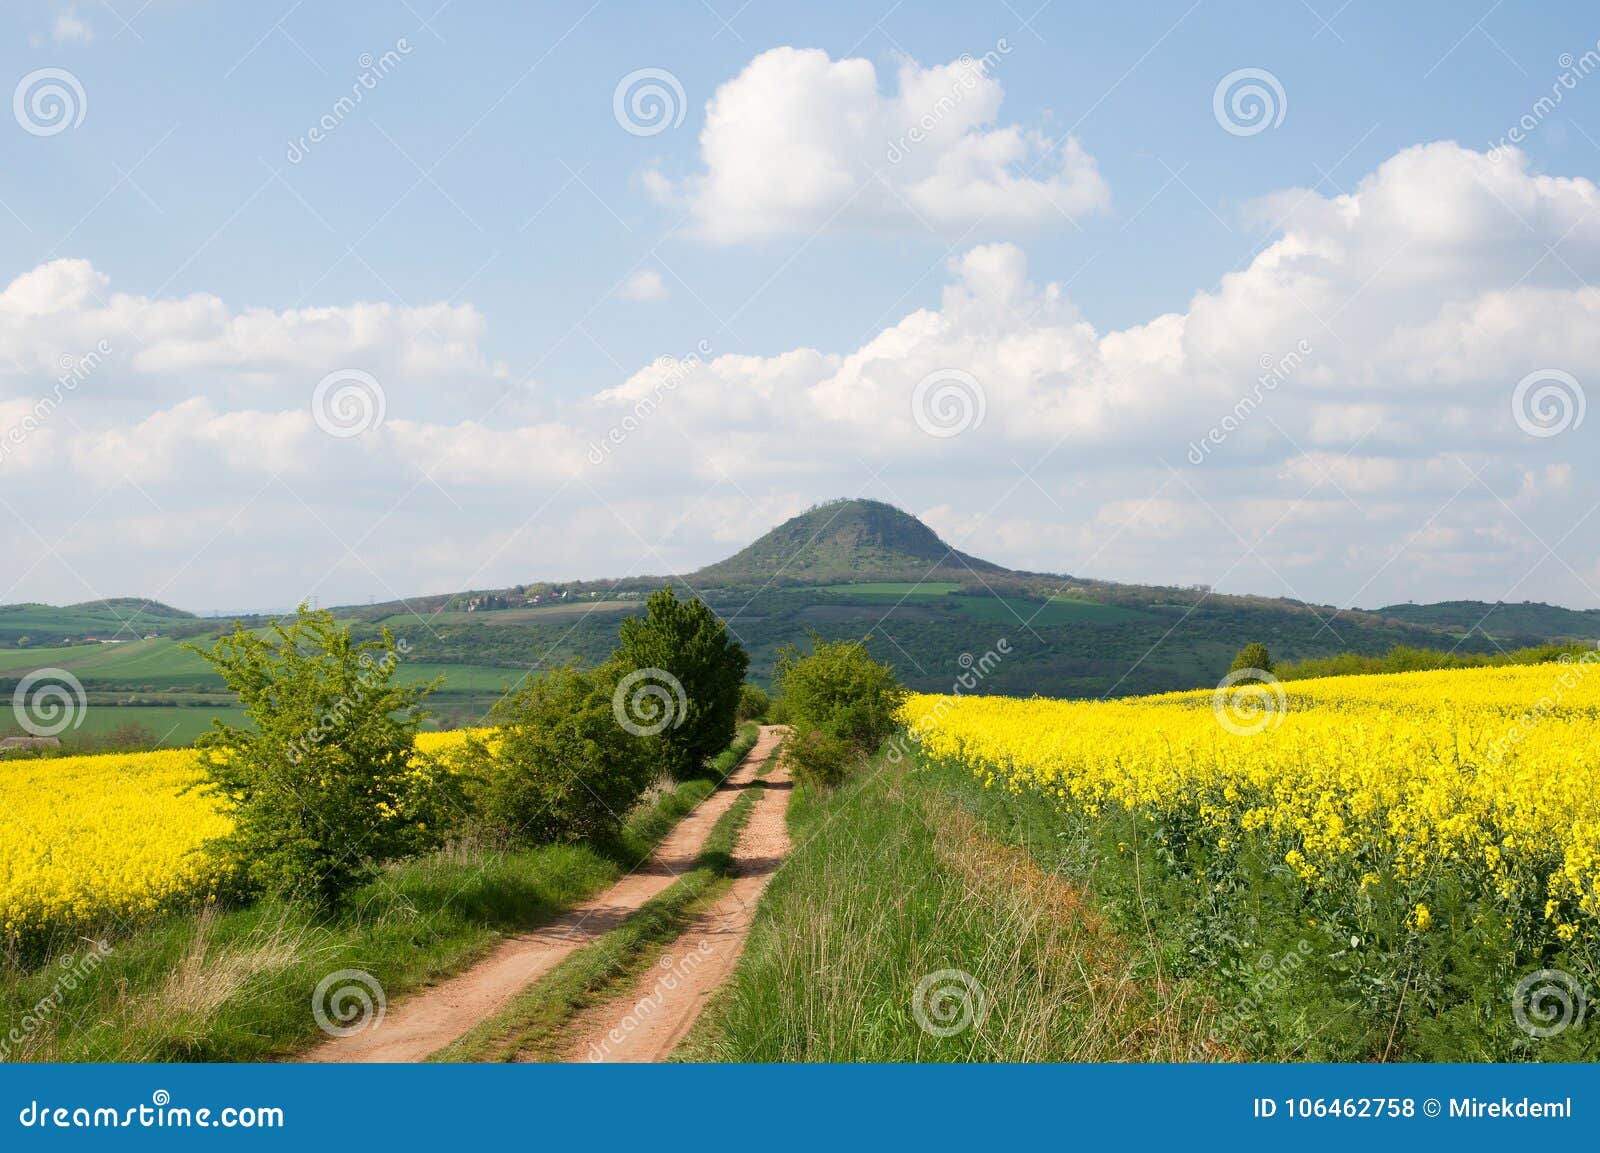 hill mila in the ceske stredohori, czech republic